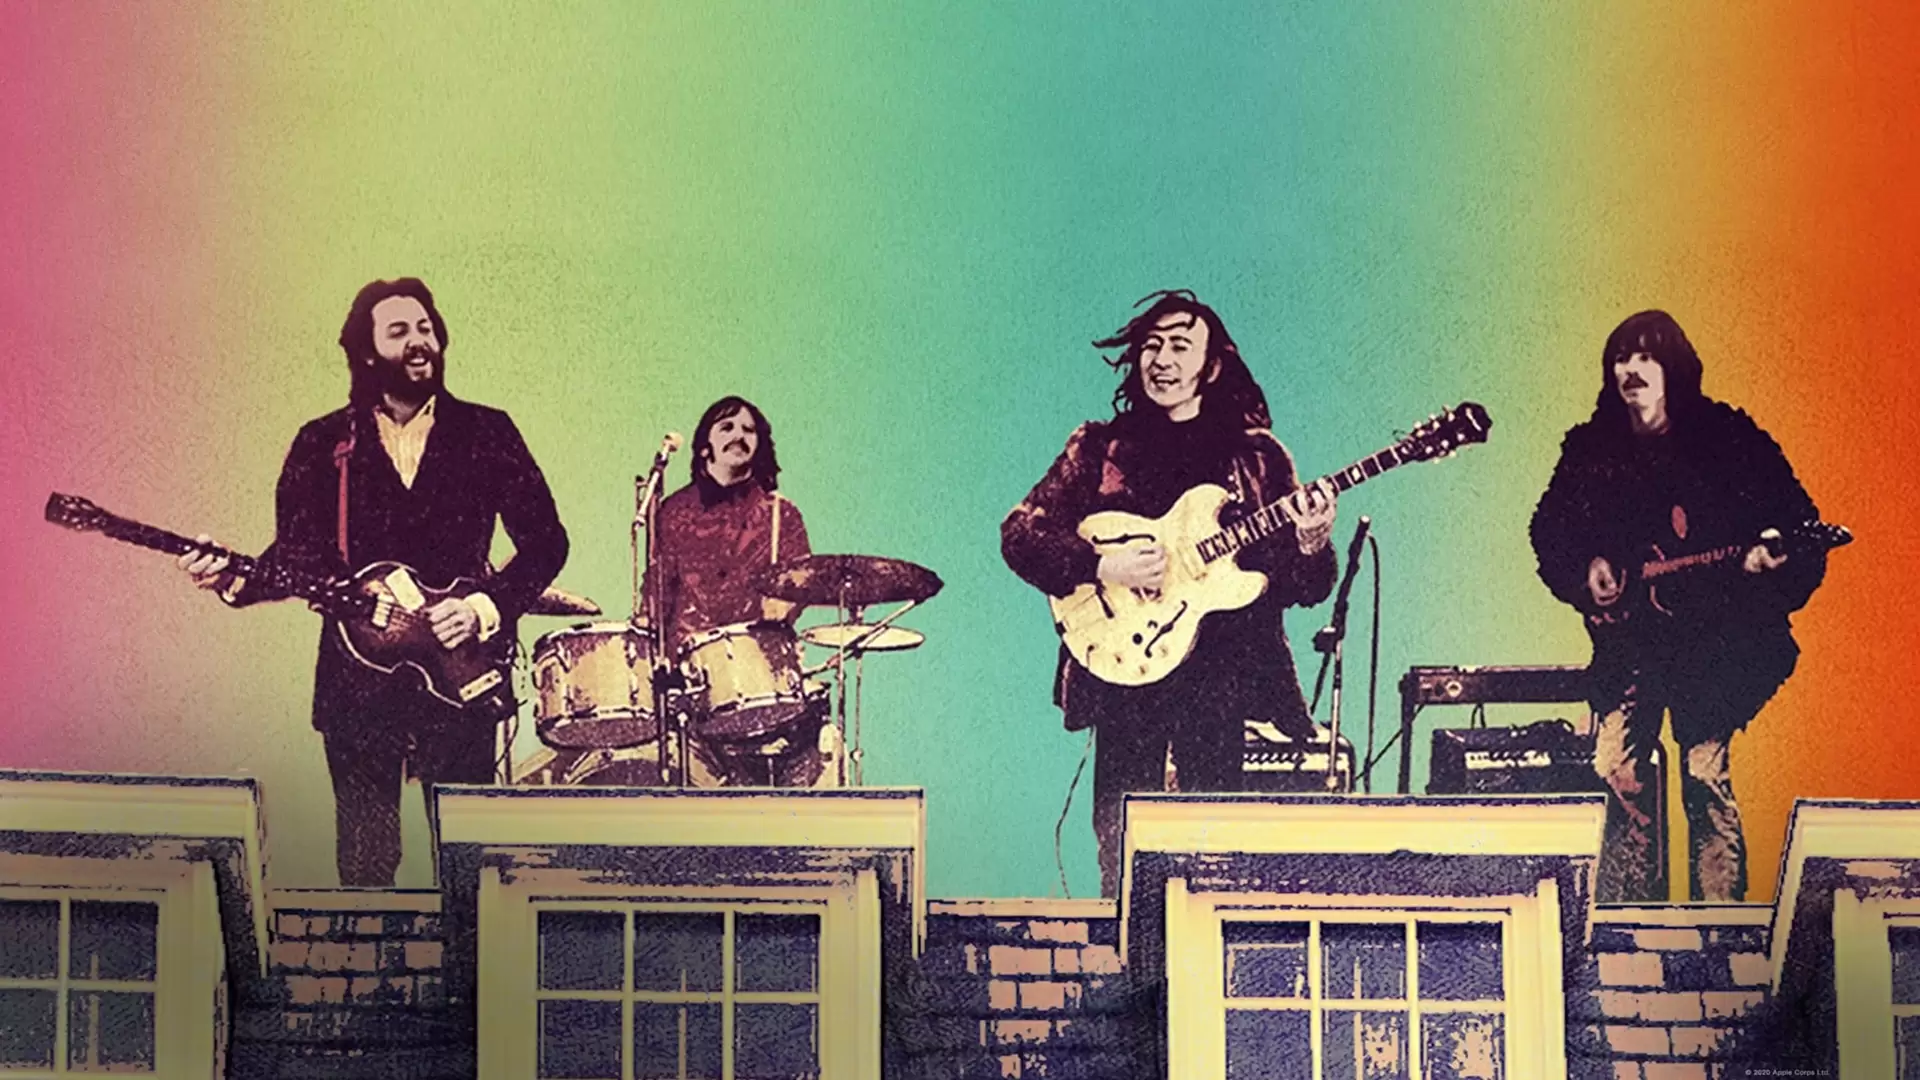 دانلود مستند The Beatles: Get Back 2021 (بیتلز: برگرد) با تماشای آنلاین